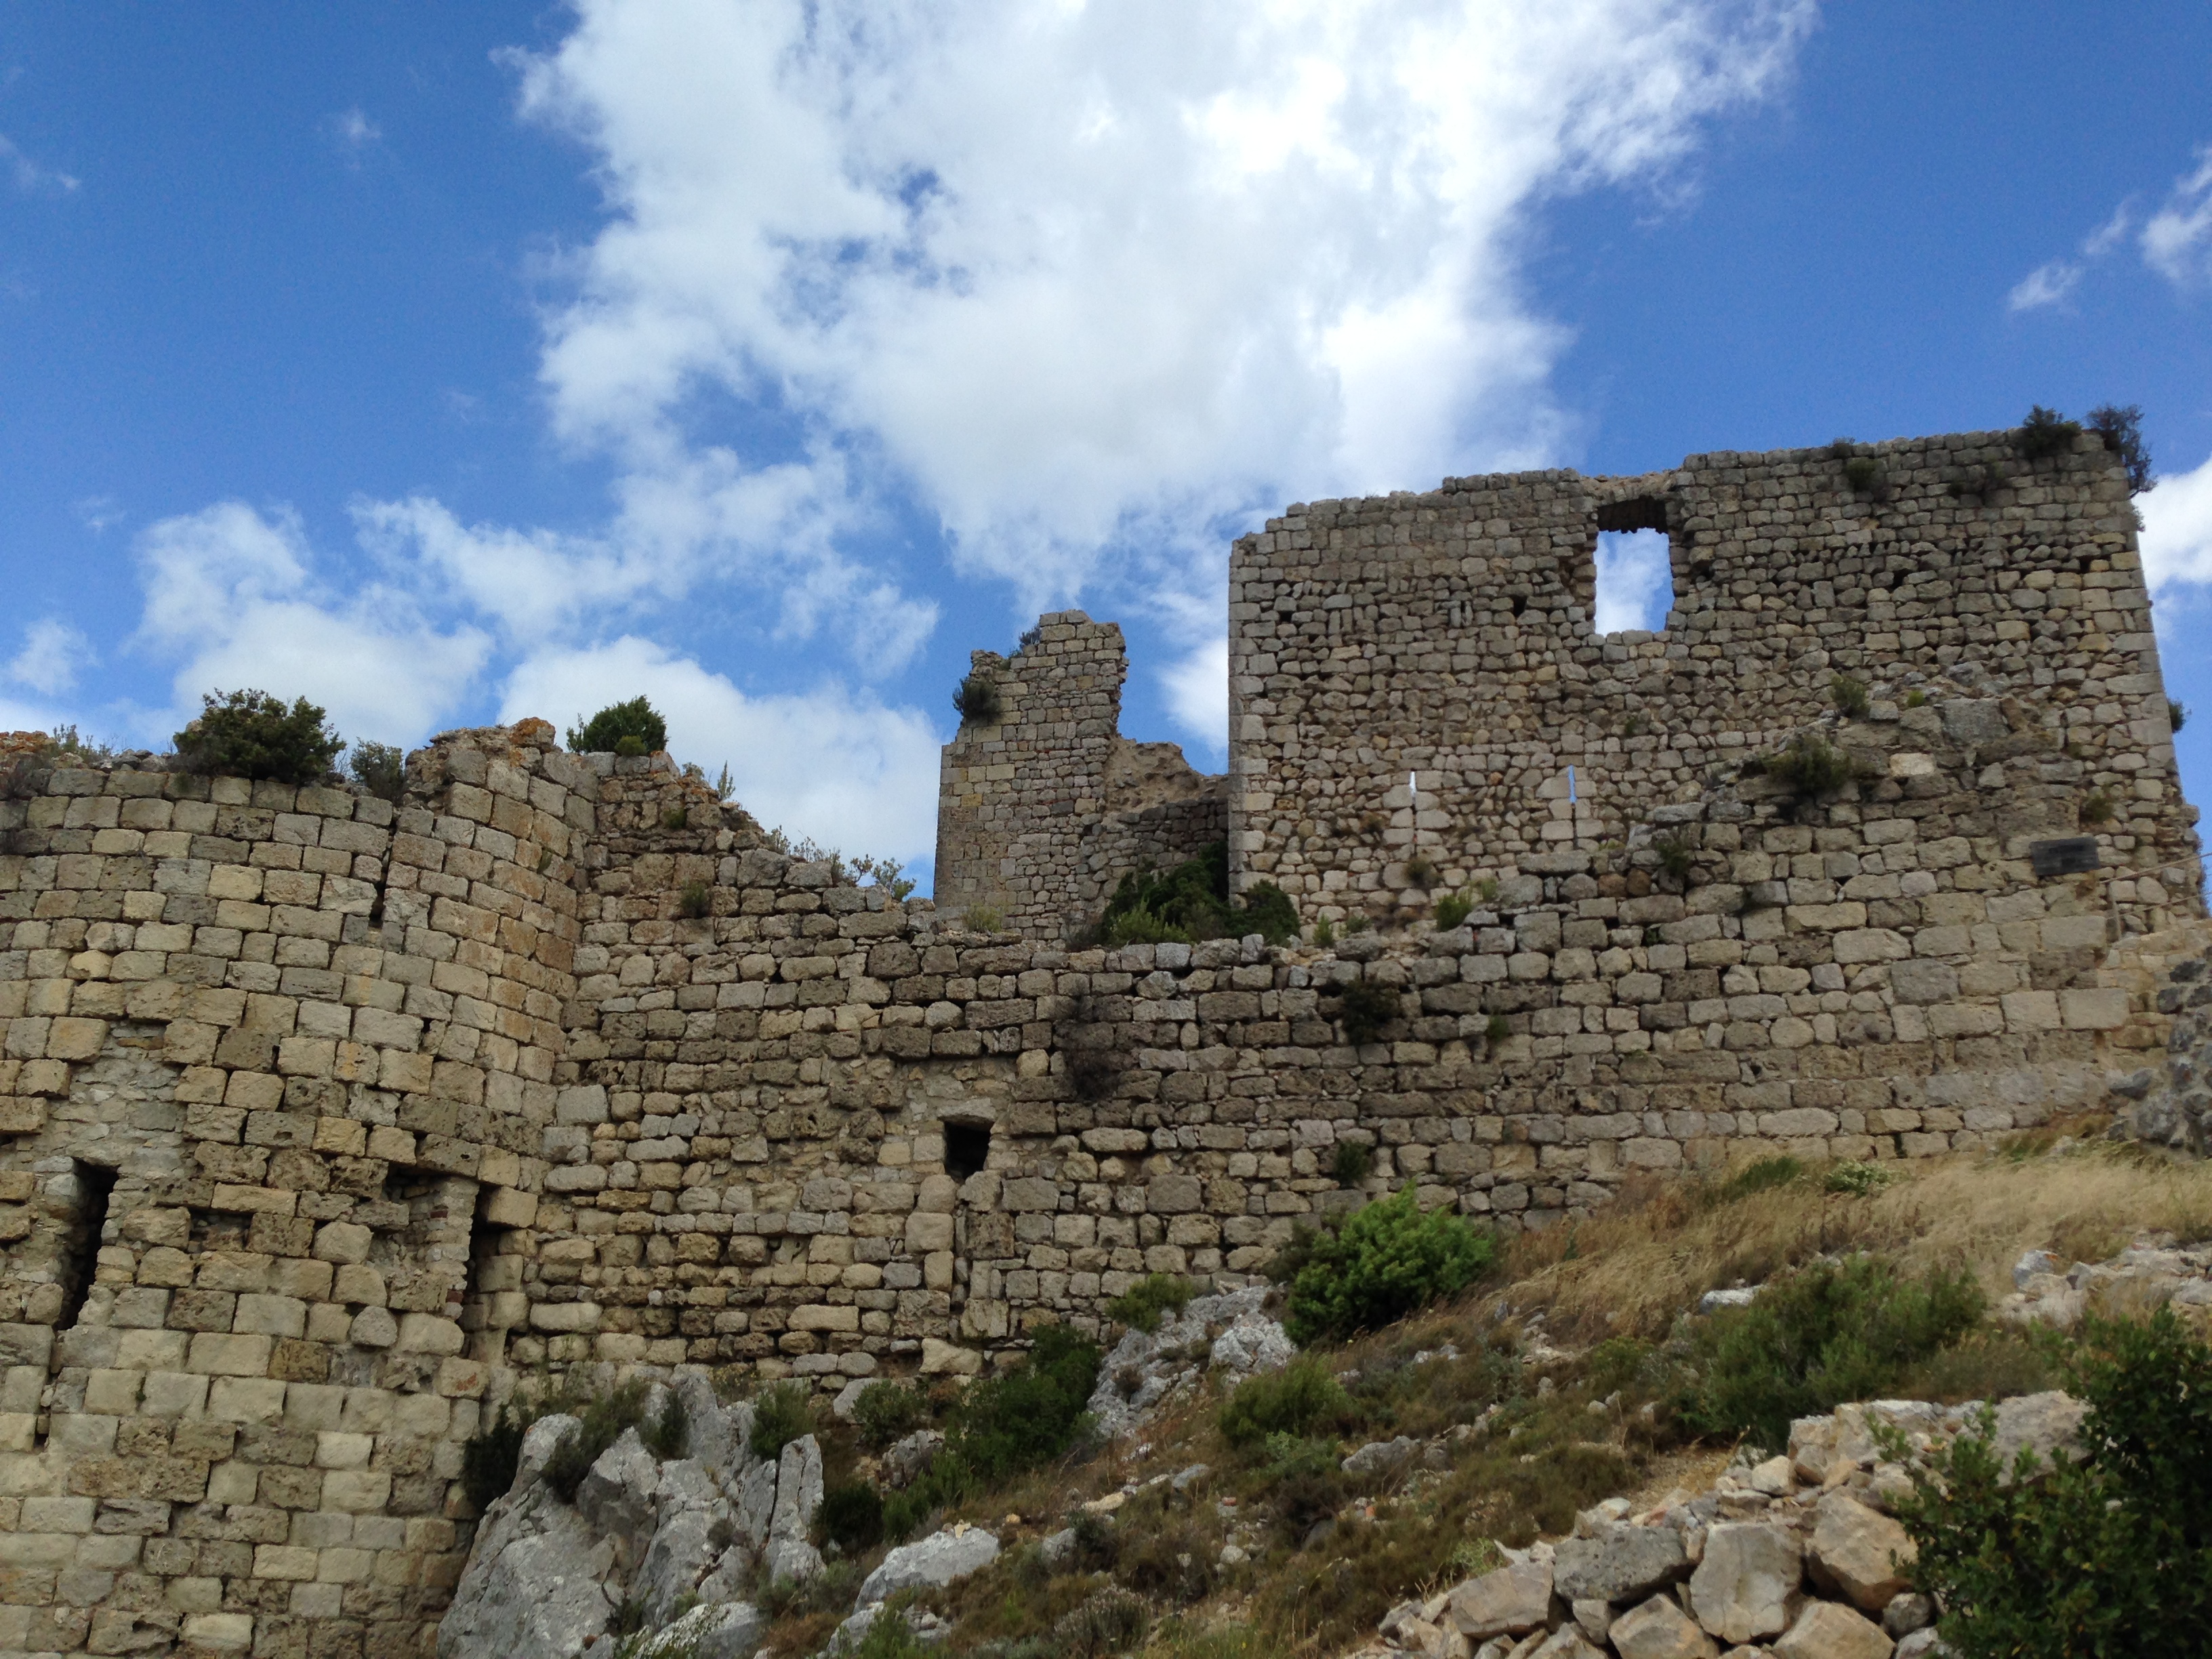 L'article sur le château d'Aguilar est disponible, clique ici